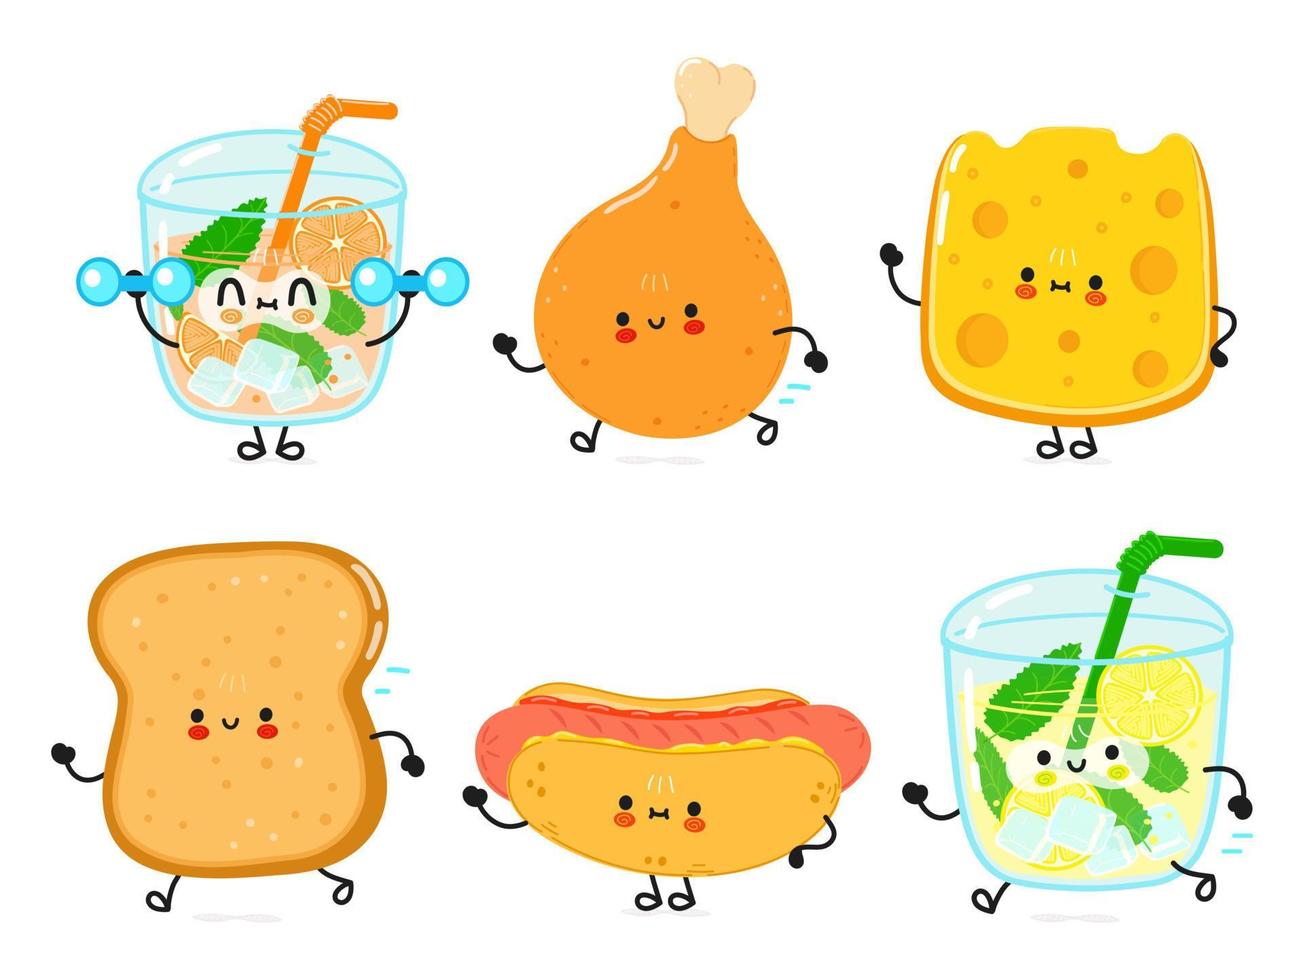 conjunto de divertidos personajes felices de comida rápida. ilustración de personaje kawaii de dibujos animados dibujados a mano vectorial. fondo blanco aislado. linda limonada, pierna de pollo, queso, tostadas, pan, hot dog, jugo vector